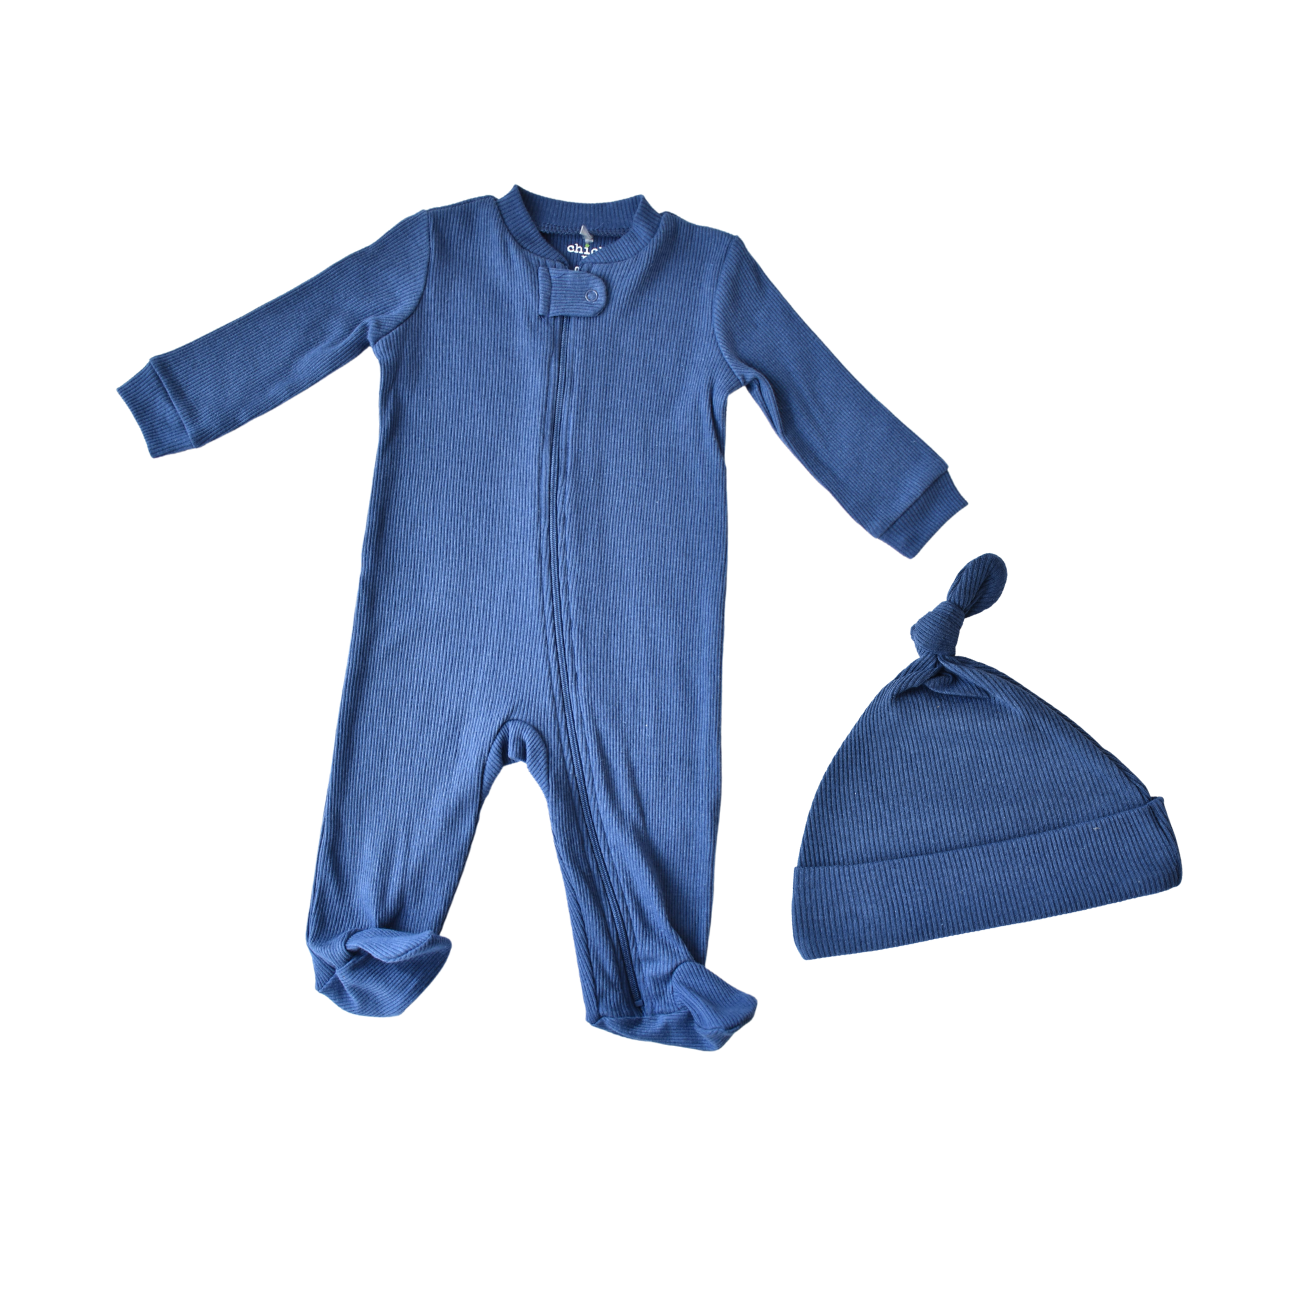 Chick Pea Pijama con pies con zipper y gorra azul